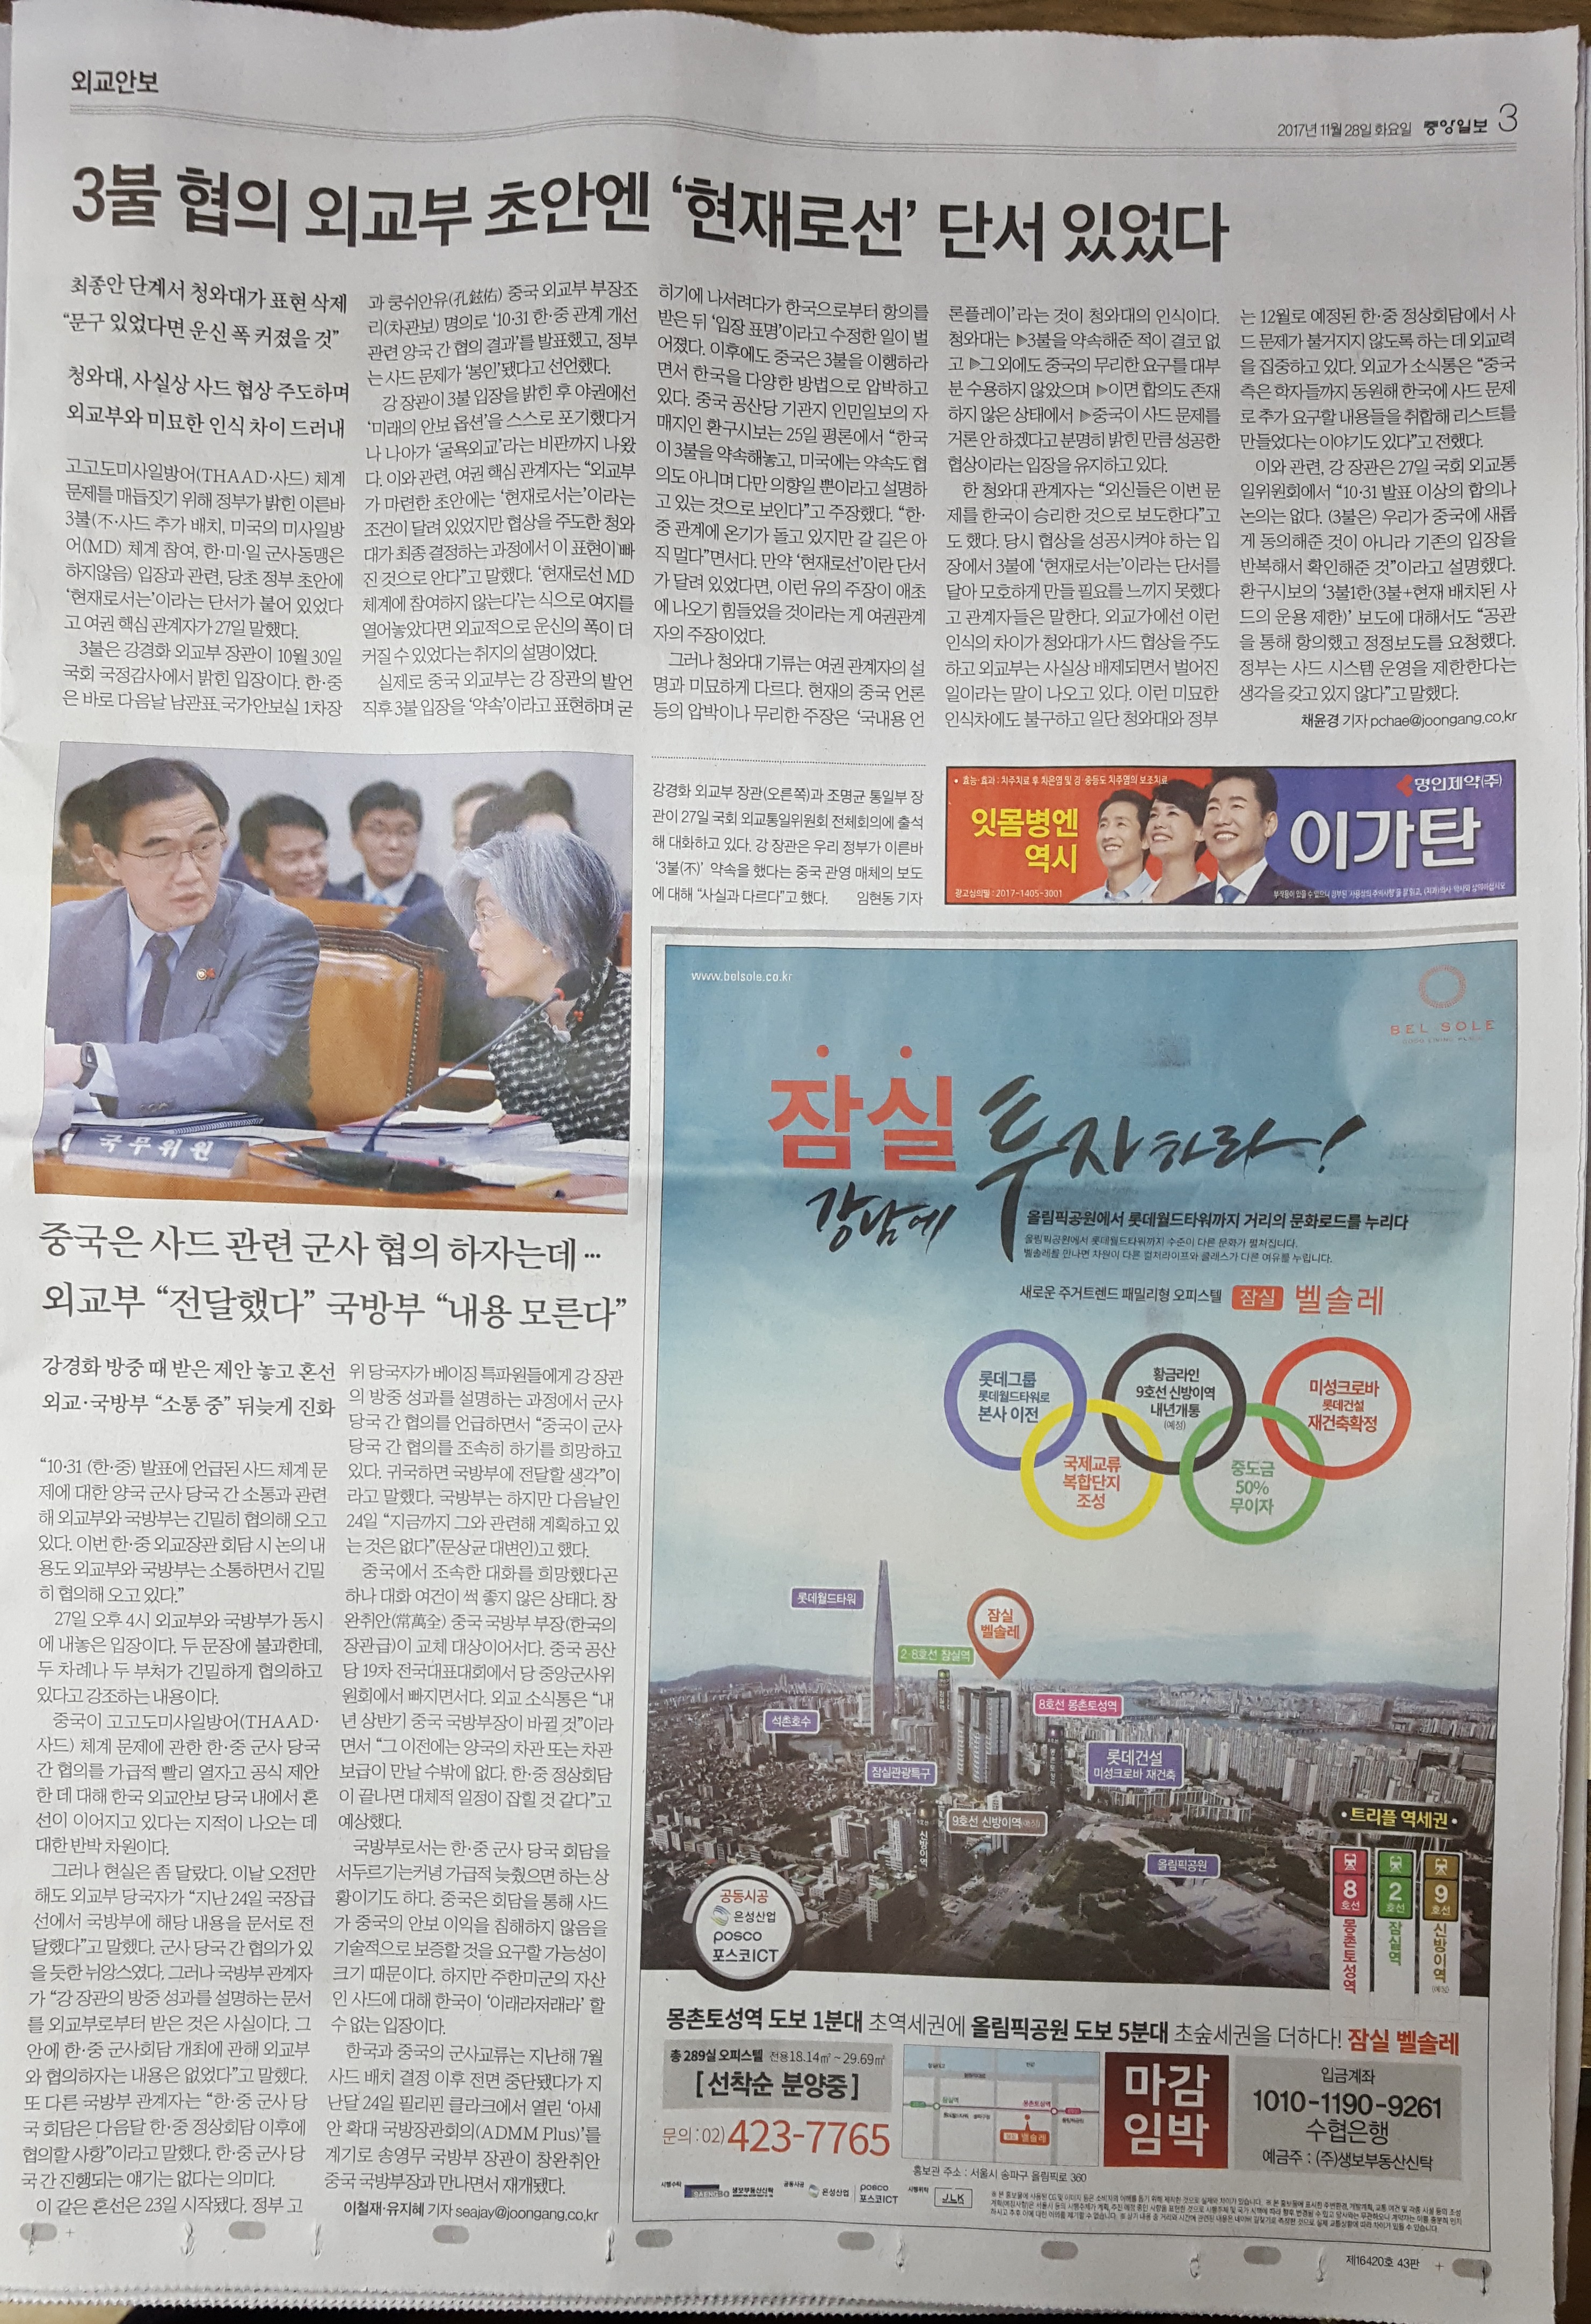 11월 28일 중앙일보 3 잠실 벨솔레 - 9단21.jpg